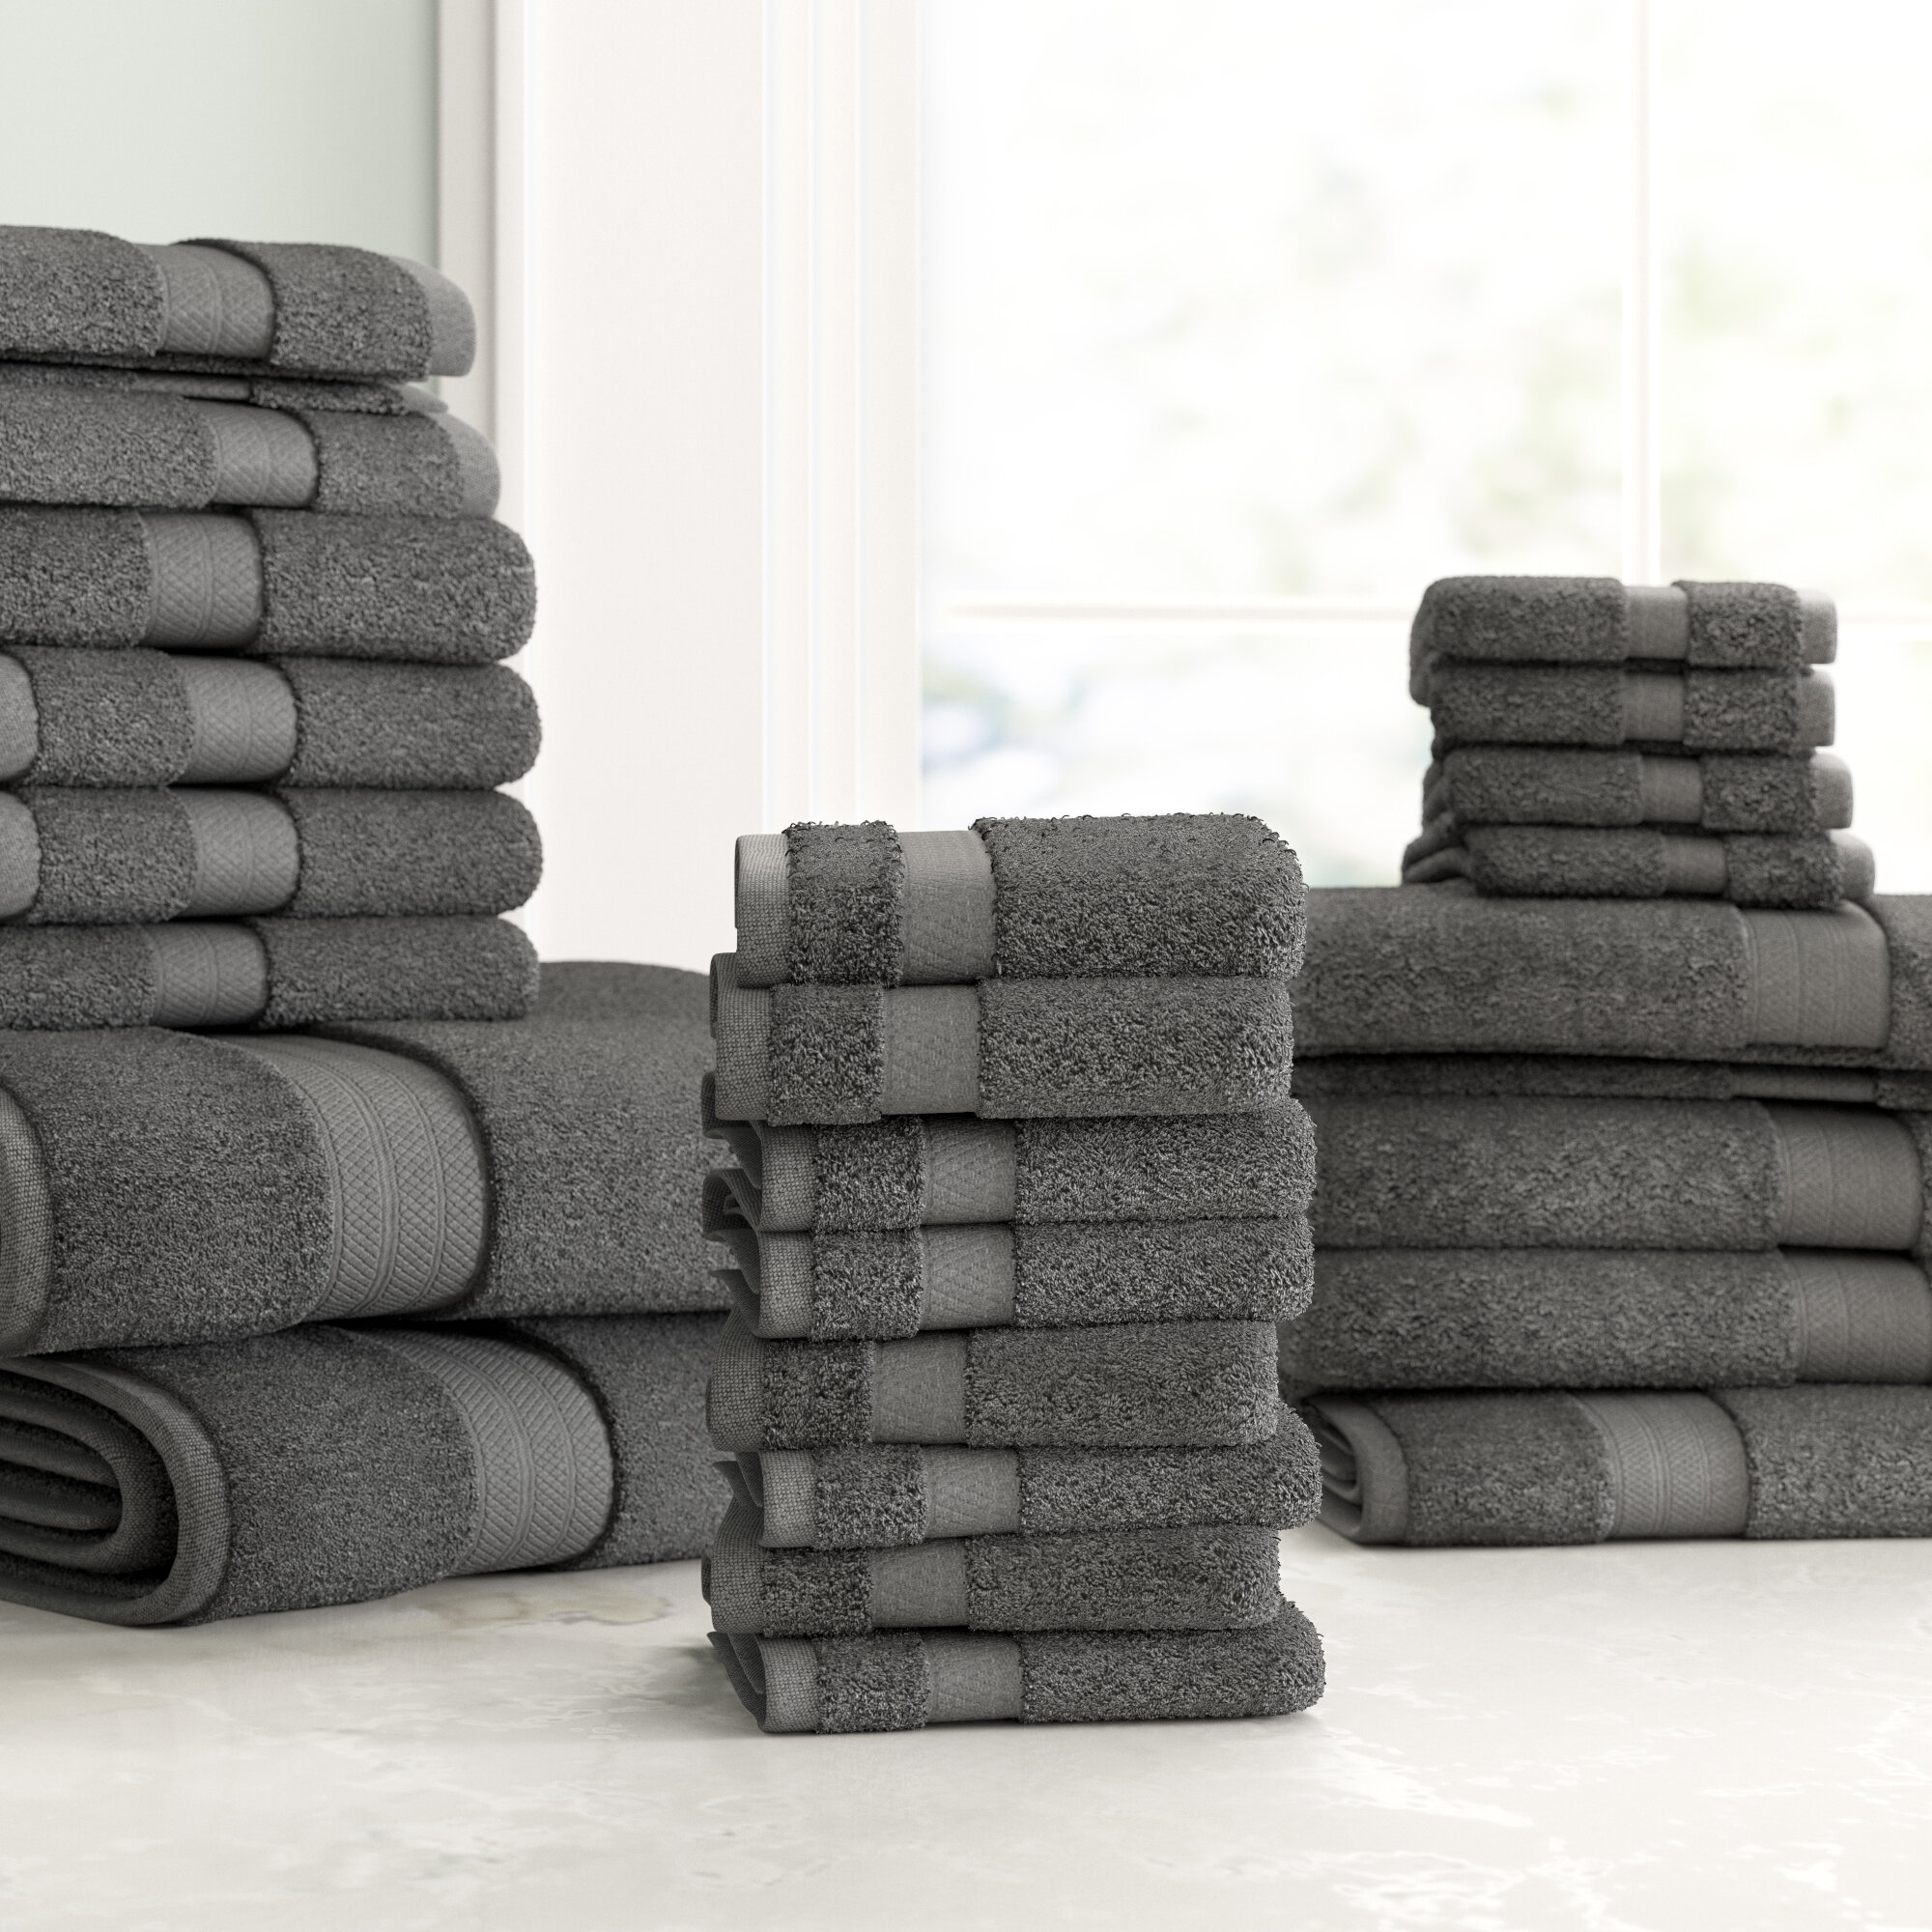 6 Piece Bath Towel Set 100% Egyptian Cotton 725 Gram 10 Colors Luxurious Towels 